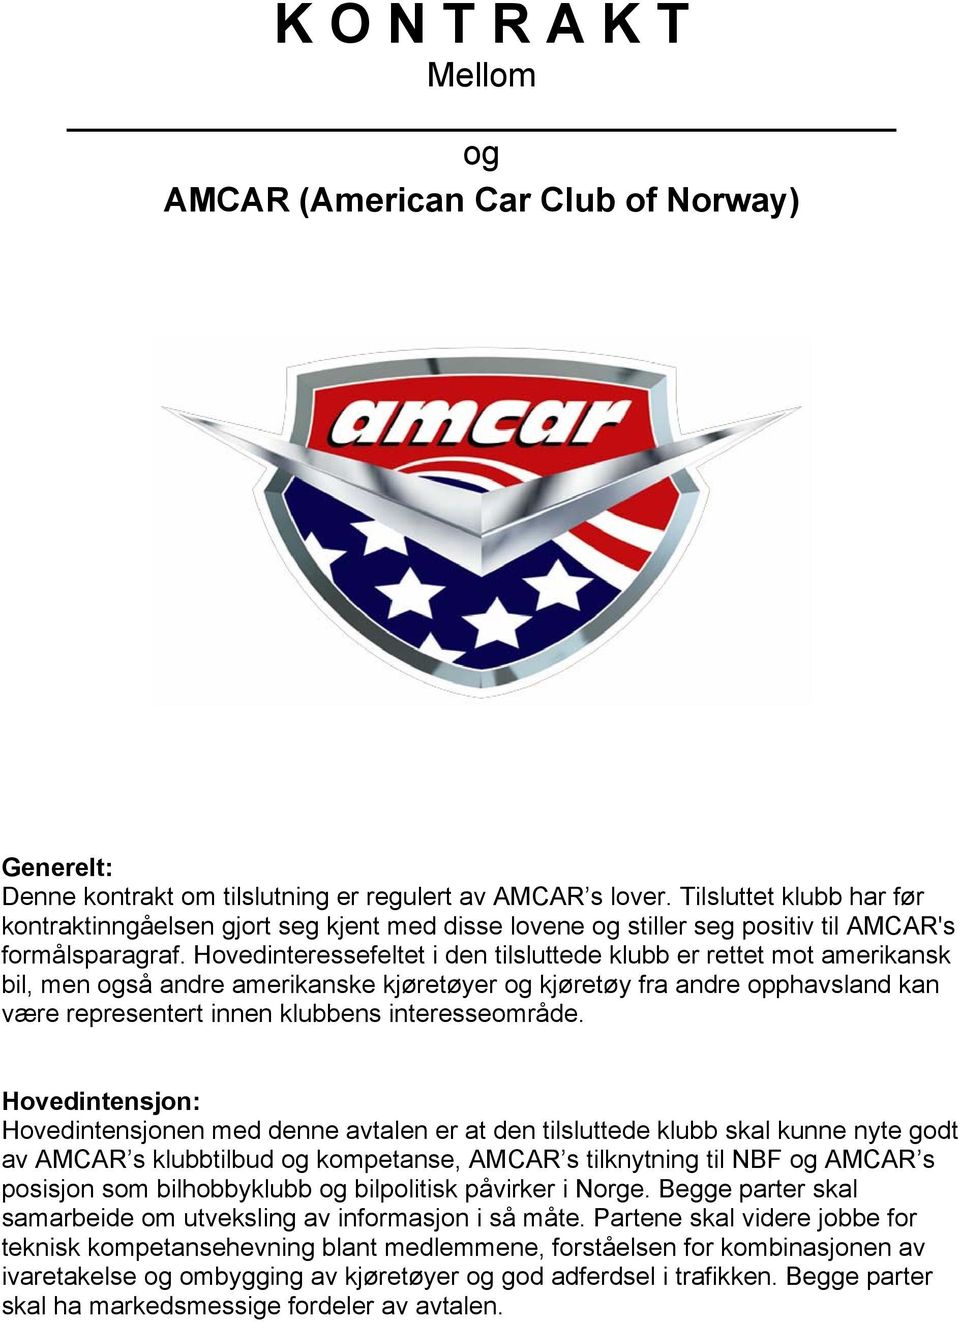 Hovedinteressefeltet i den tilsluttede klubb er rettet mot amerikansk bil, men også andre amerikanske kjøretøyer og kjøretøy fra andre opphavsland kan være representert innen klubbens interesseområde.